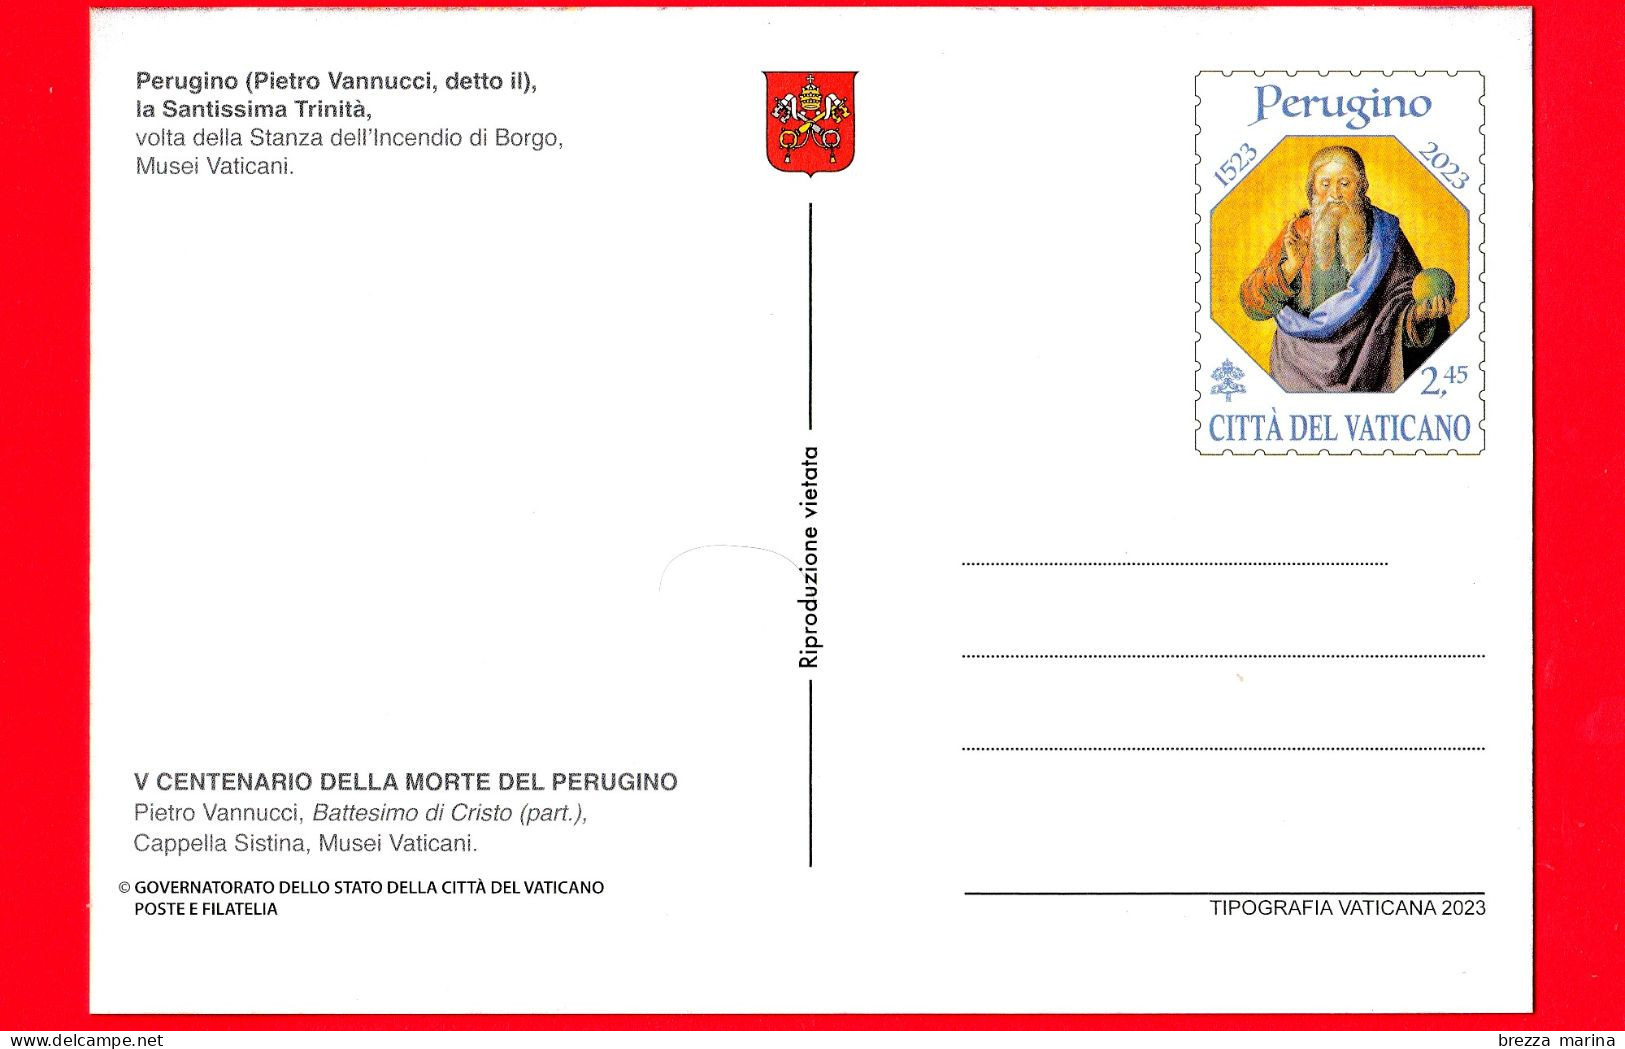 Nuovo - MNH - VATICANO - 2023 - Cartolina postale – 500 anni della morte di Pietro Vannucci, in arte Perugino – 8.20